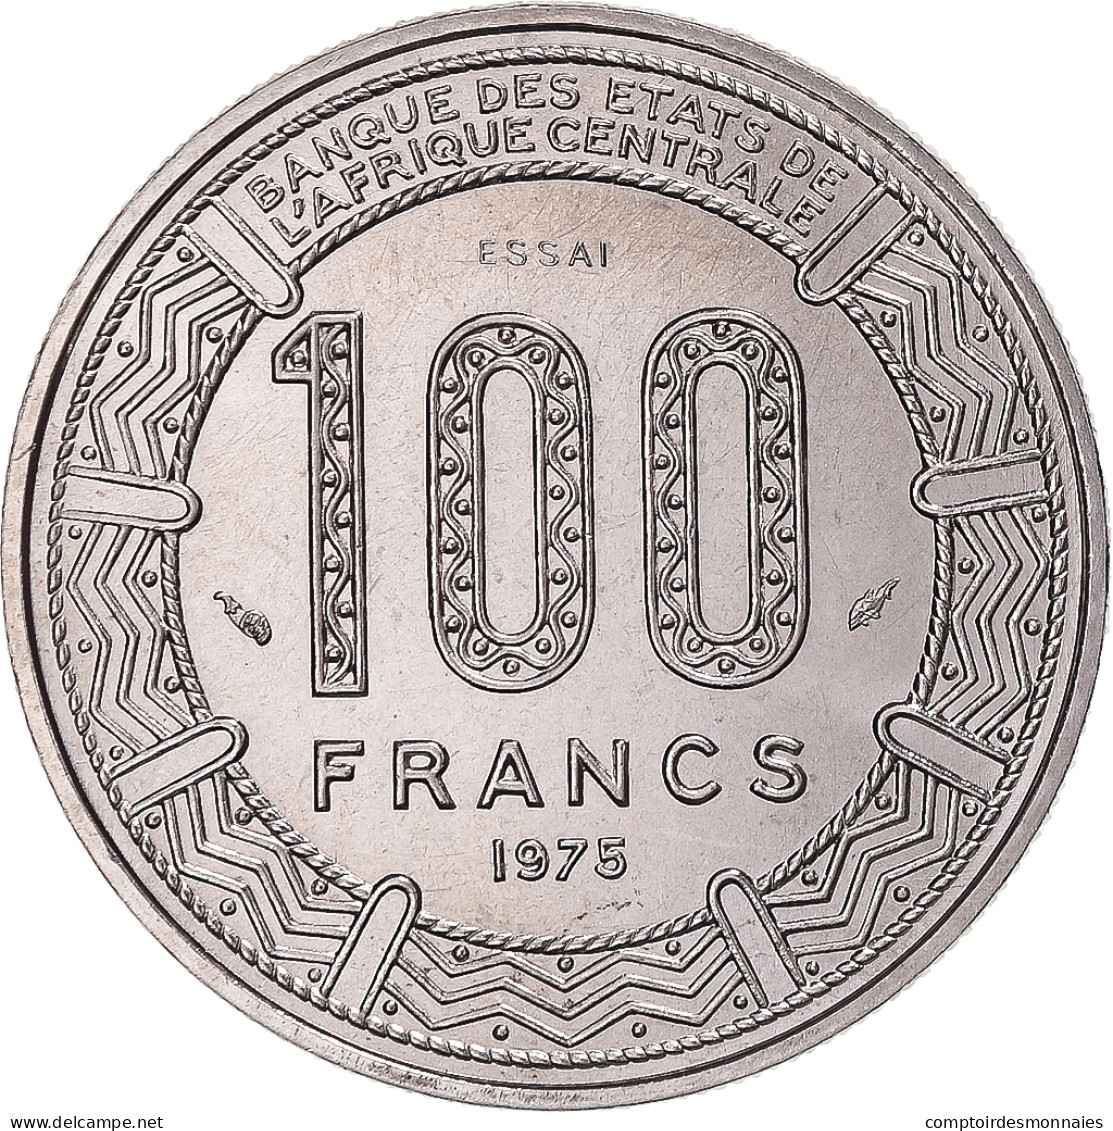 Monnaie, Cameroun, 100 Francs, 1975, Paris, ESSAI, FDC, Nickel, KM:E16 - Camerun